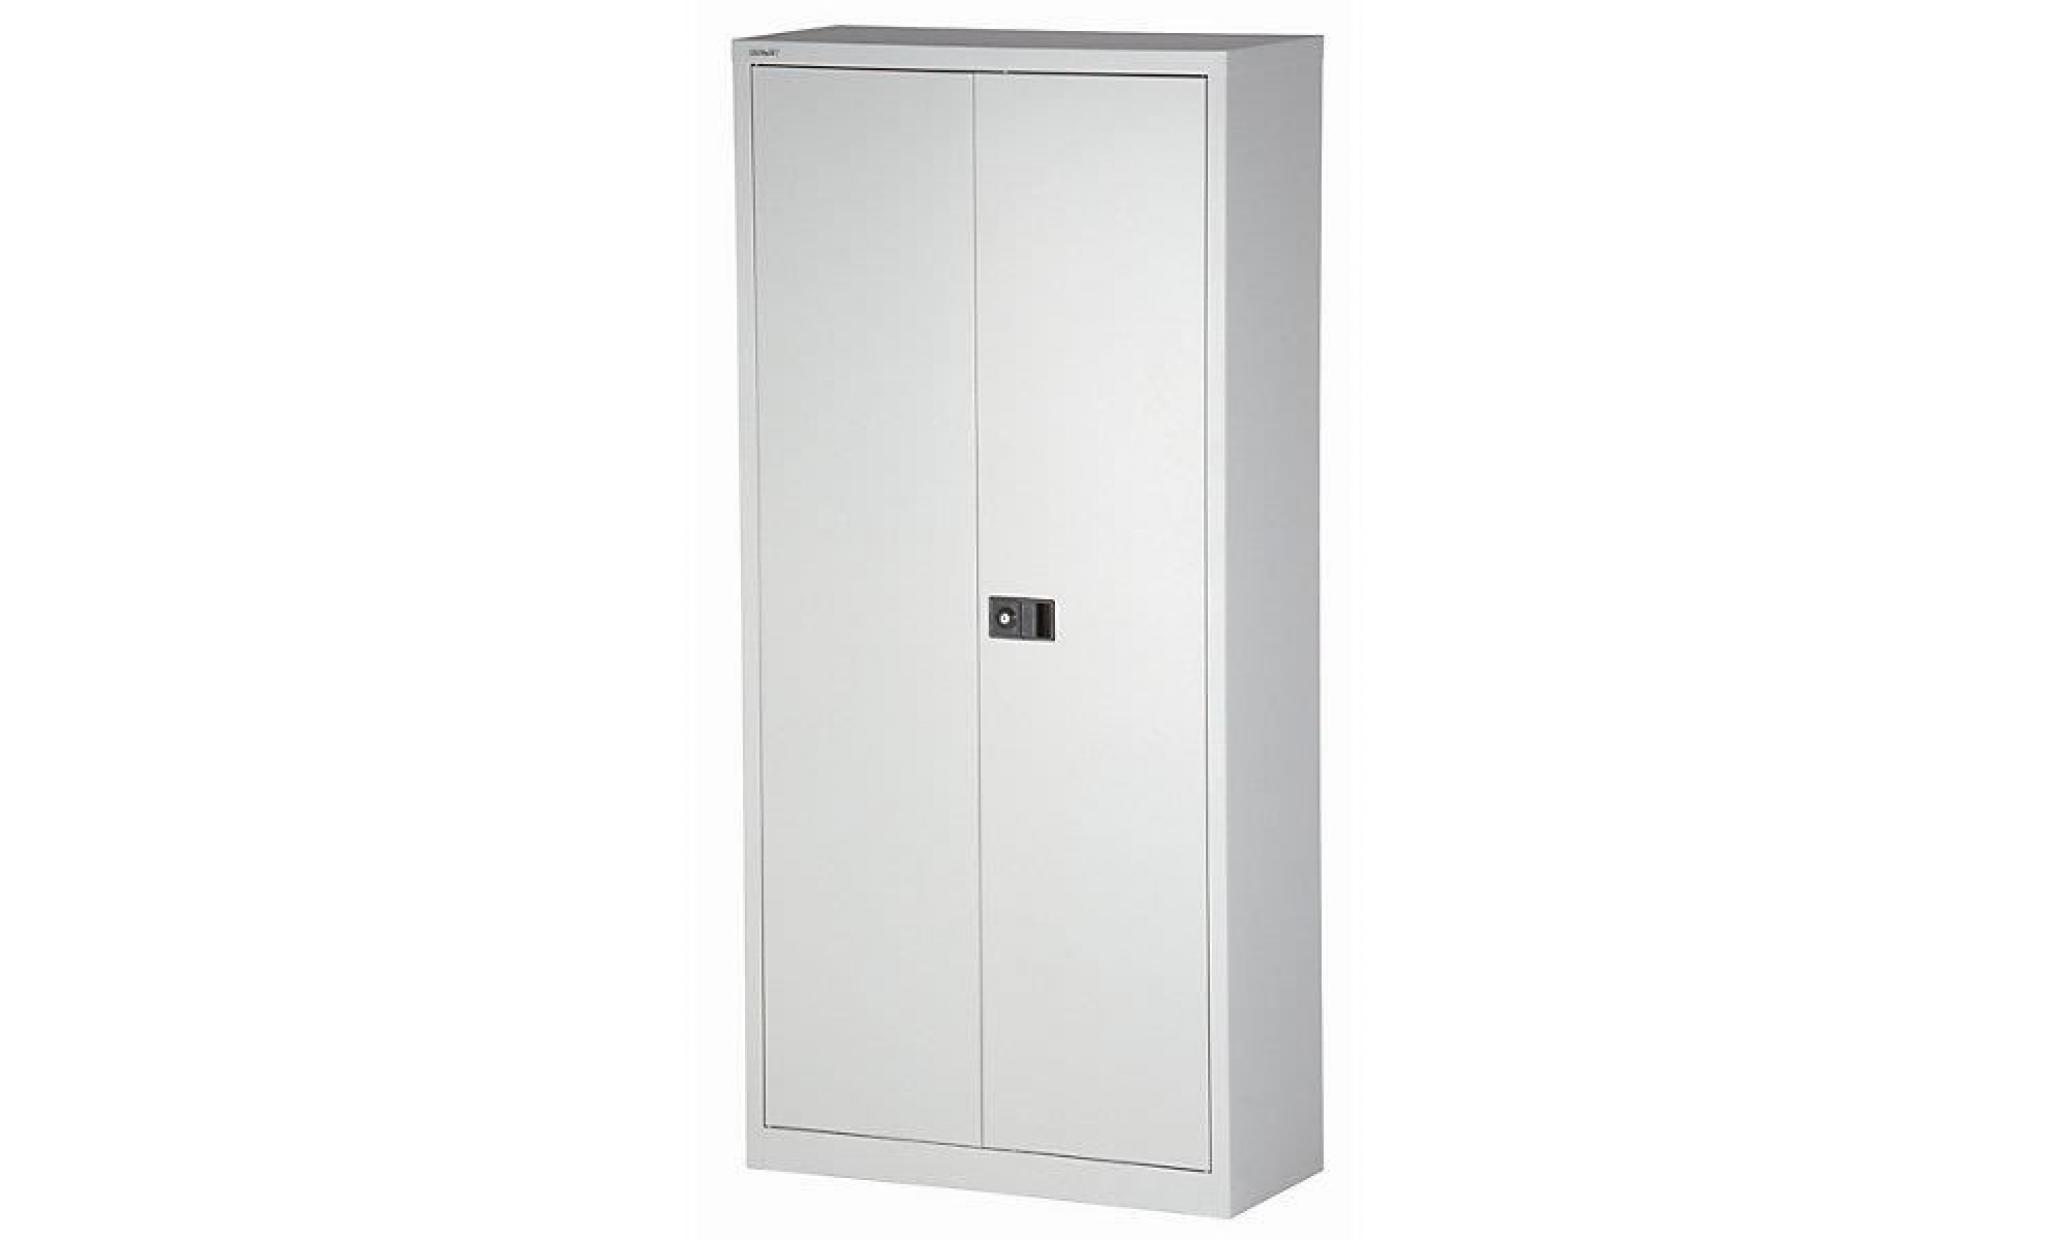 bisley armoire à portes battantes universal   vestiaire noir   armoire d'atelier armoire de bureau armoire métallique armoires pas cher